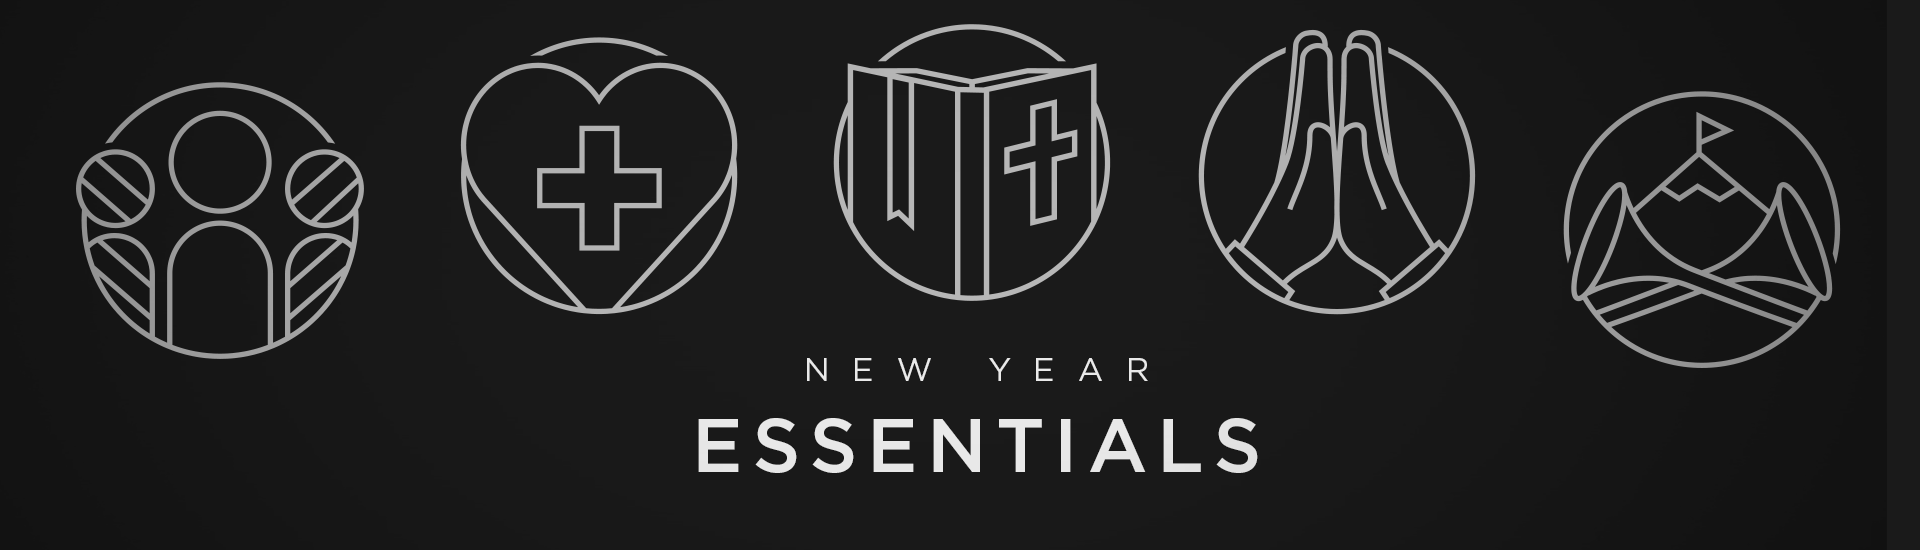 New Year Essentials 2019